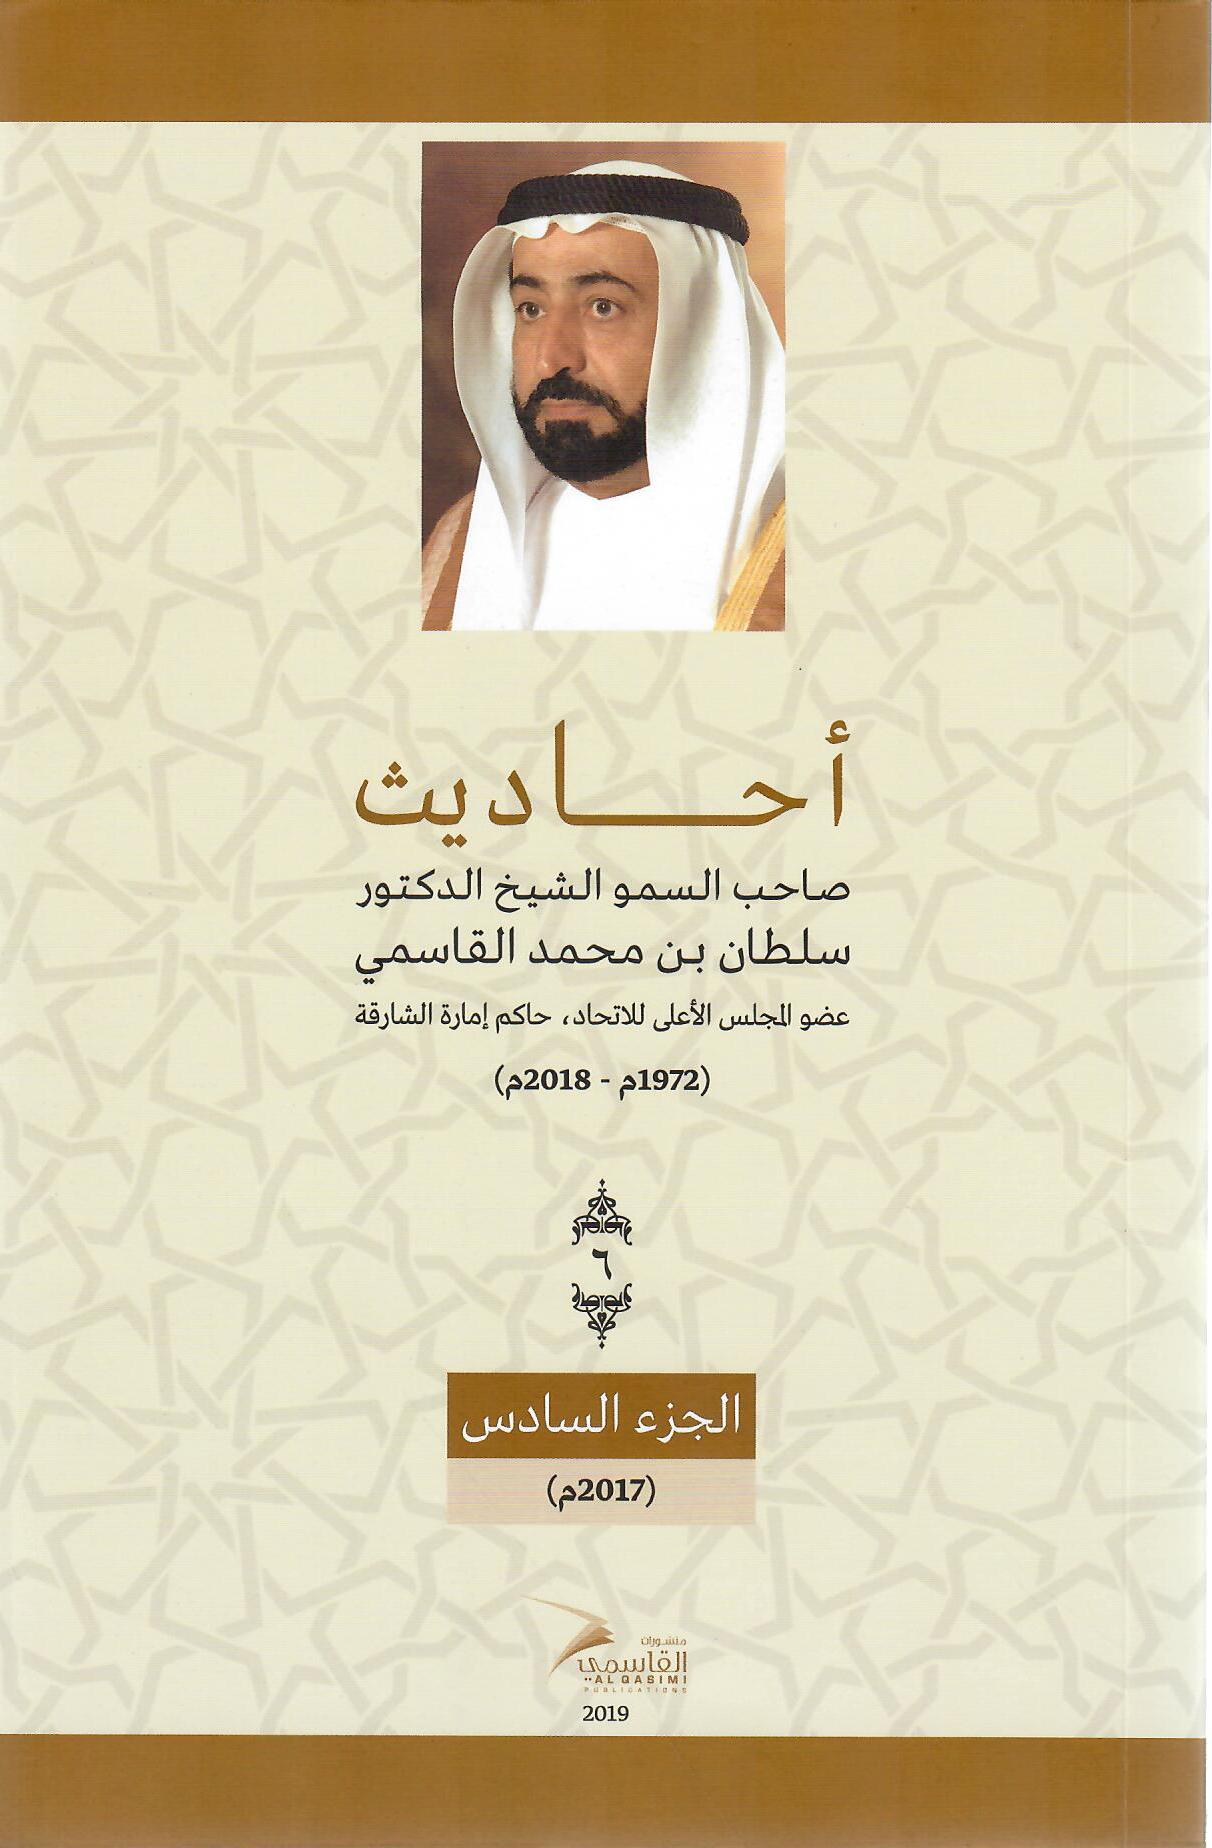 أحاديث صاحب السمو الشيخ الدكتور سلطان بن محمد القاسمي عضو المجلس الأعلى حاكم الشارقة ( 1972م - 2018م) الجزء السادس